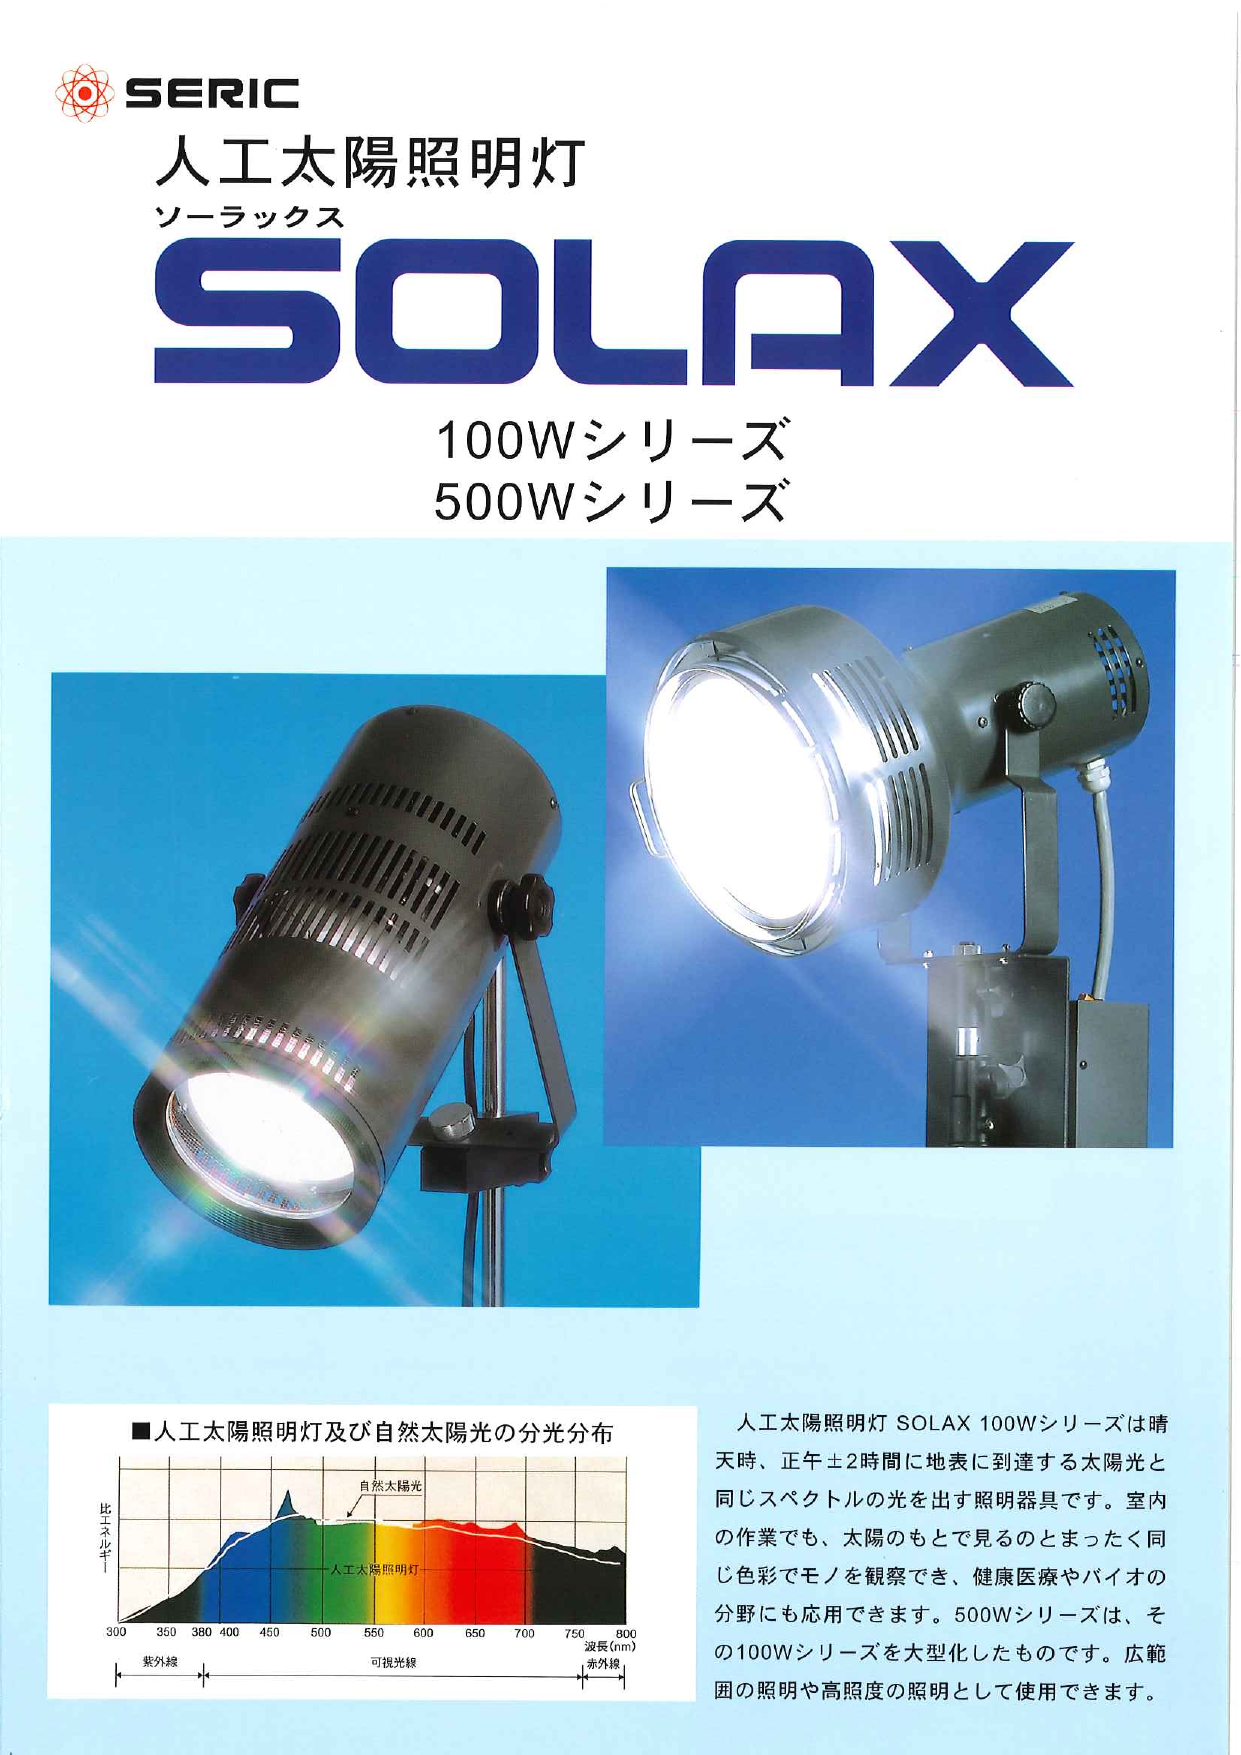 人工太陽照明灯 SOLAX（セリック株式会社）のカタログ無料ダウンロード｜製造業向けカタログポータル Aperza Catalog（アペルザカタログ）